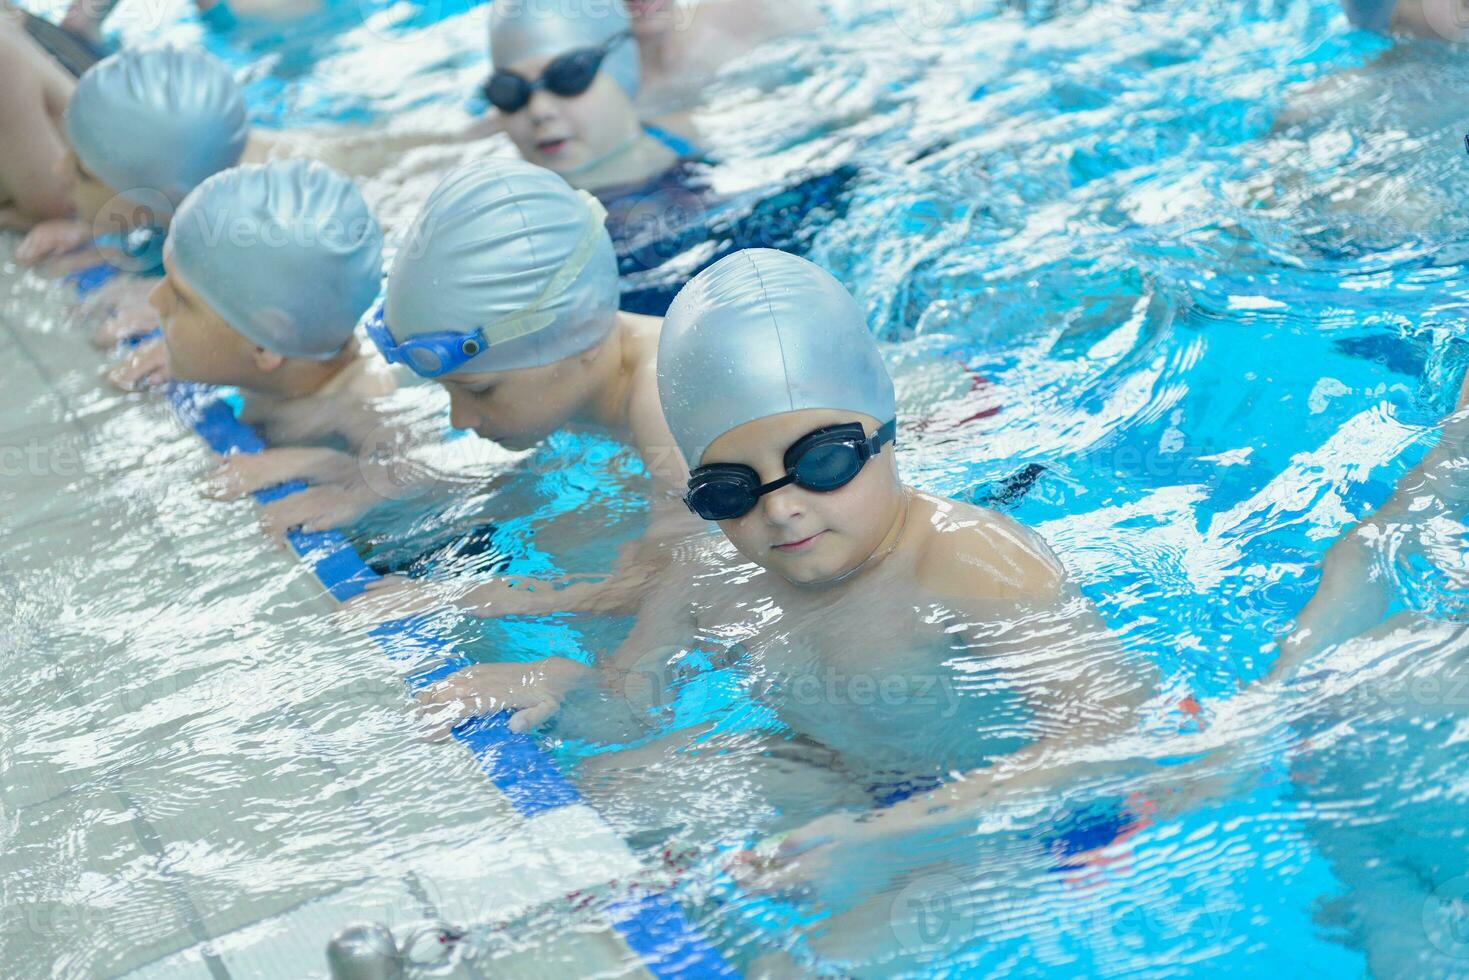 kindergroep bij zwembad foto